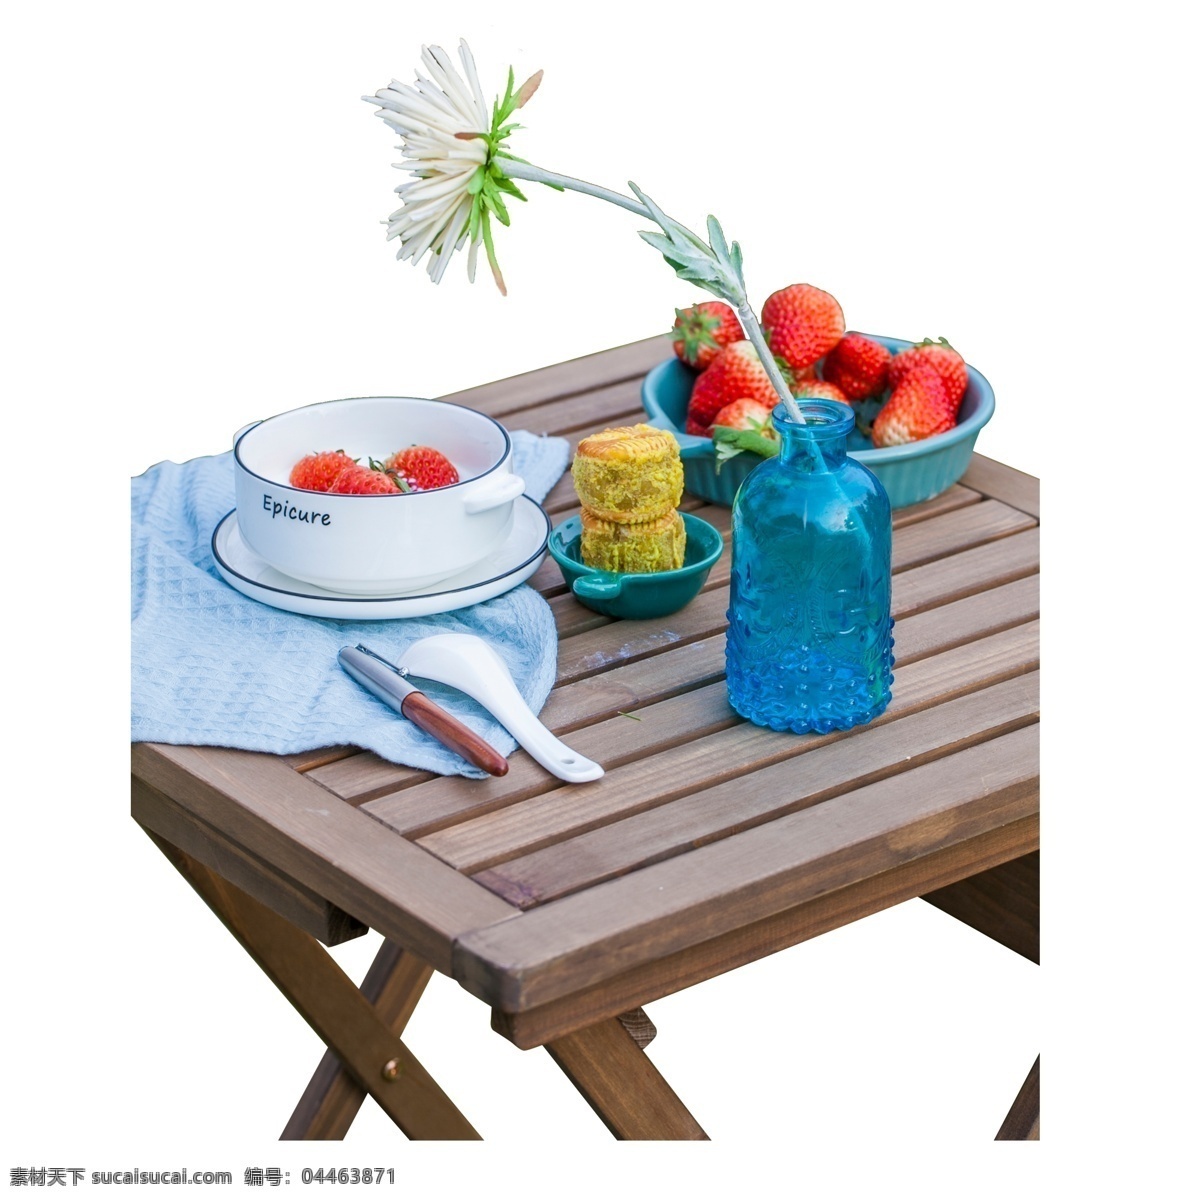 彩色 草莓 食物 桌子 元素 白色瓷器 水果 吃的 纹理 木板 白色勺子 餐具 蓝色塑料瓶子 盘子